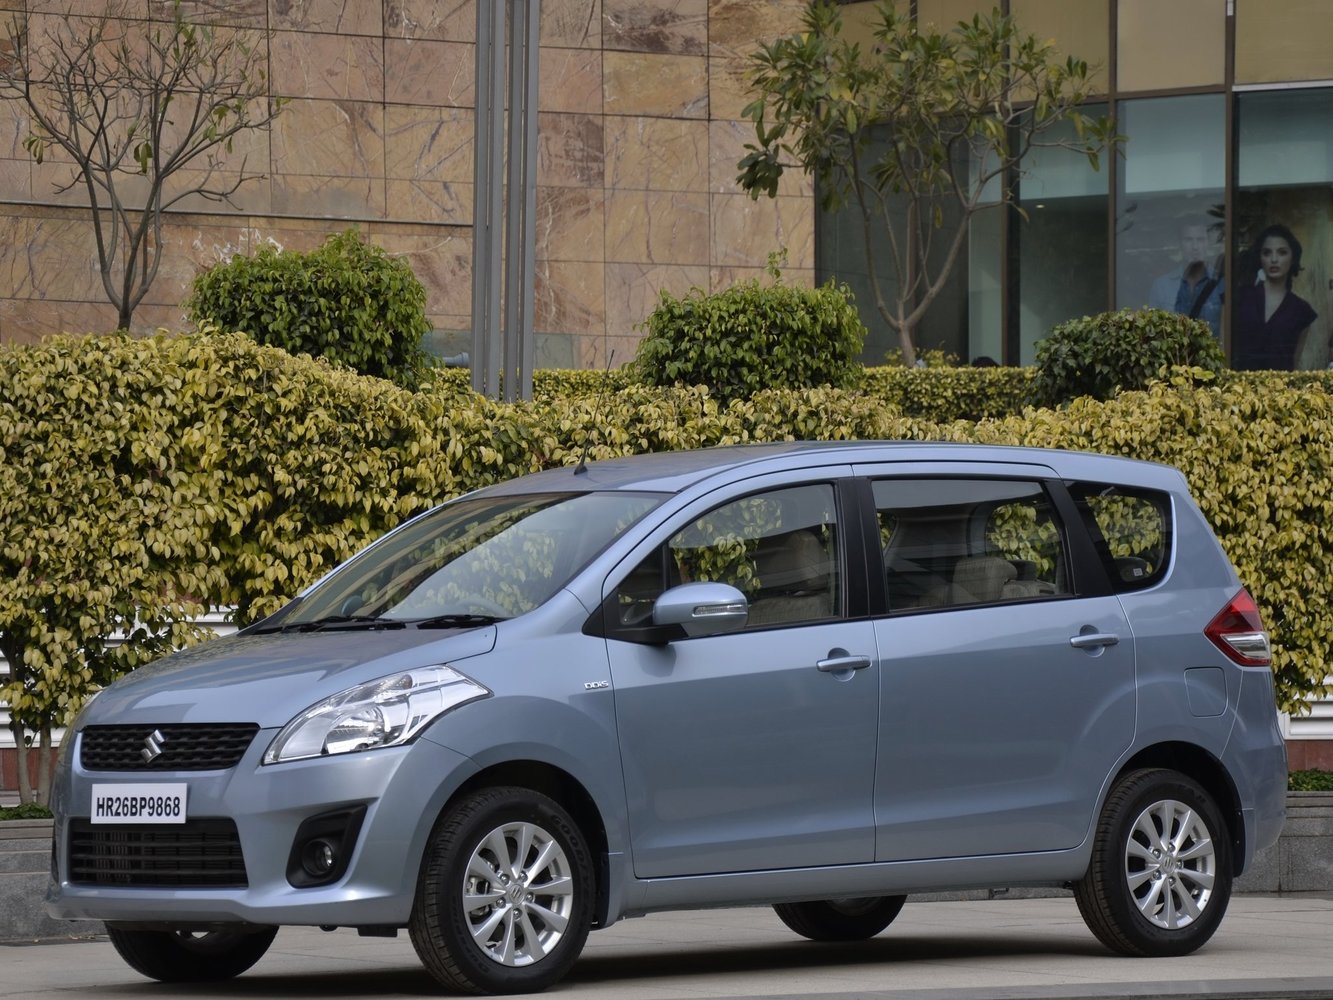 минивэн Suzuki Ertiga 2012 - 2016г выпуска модификация 1.2 MT (90 л.с.)